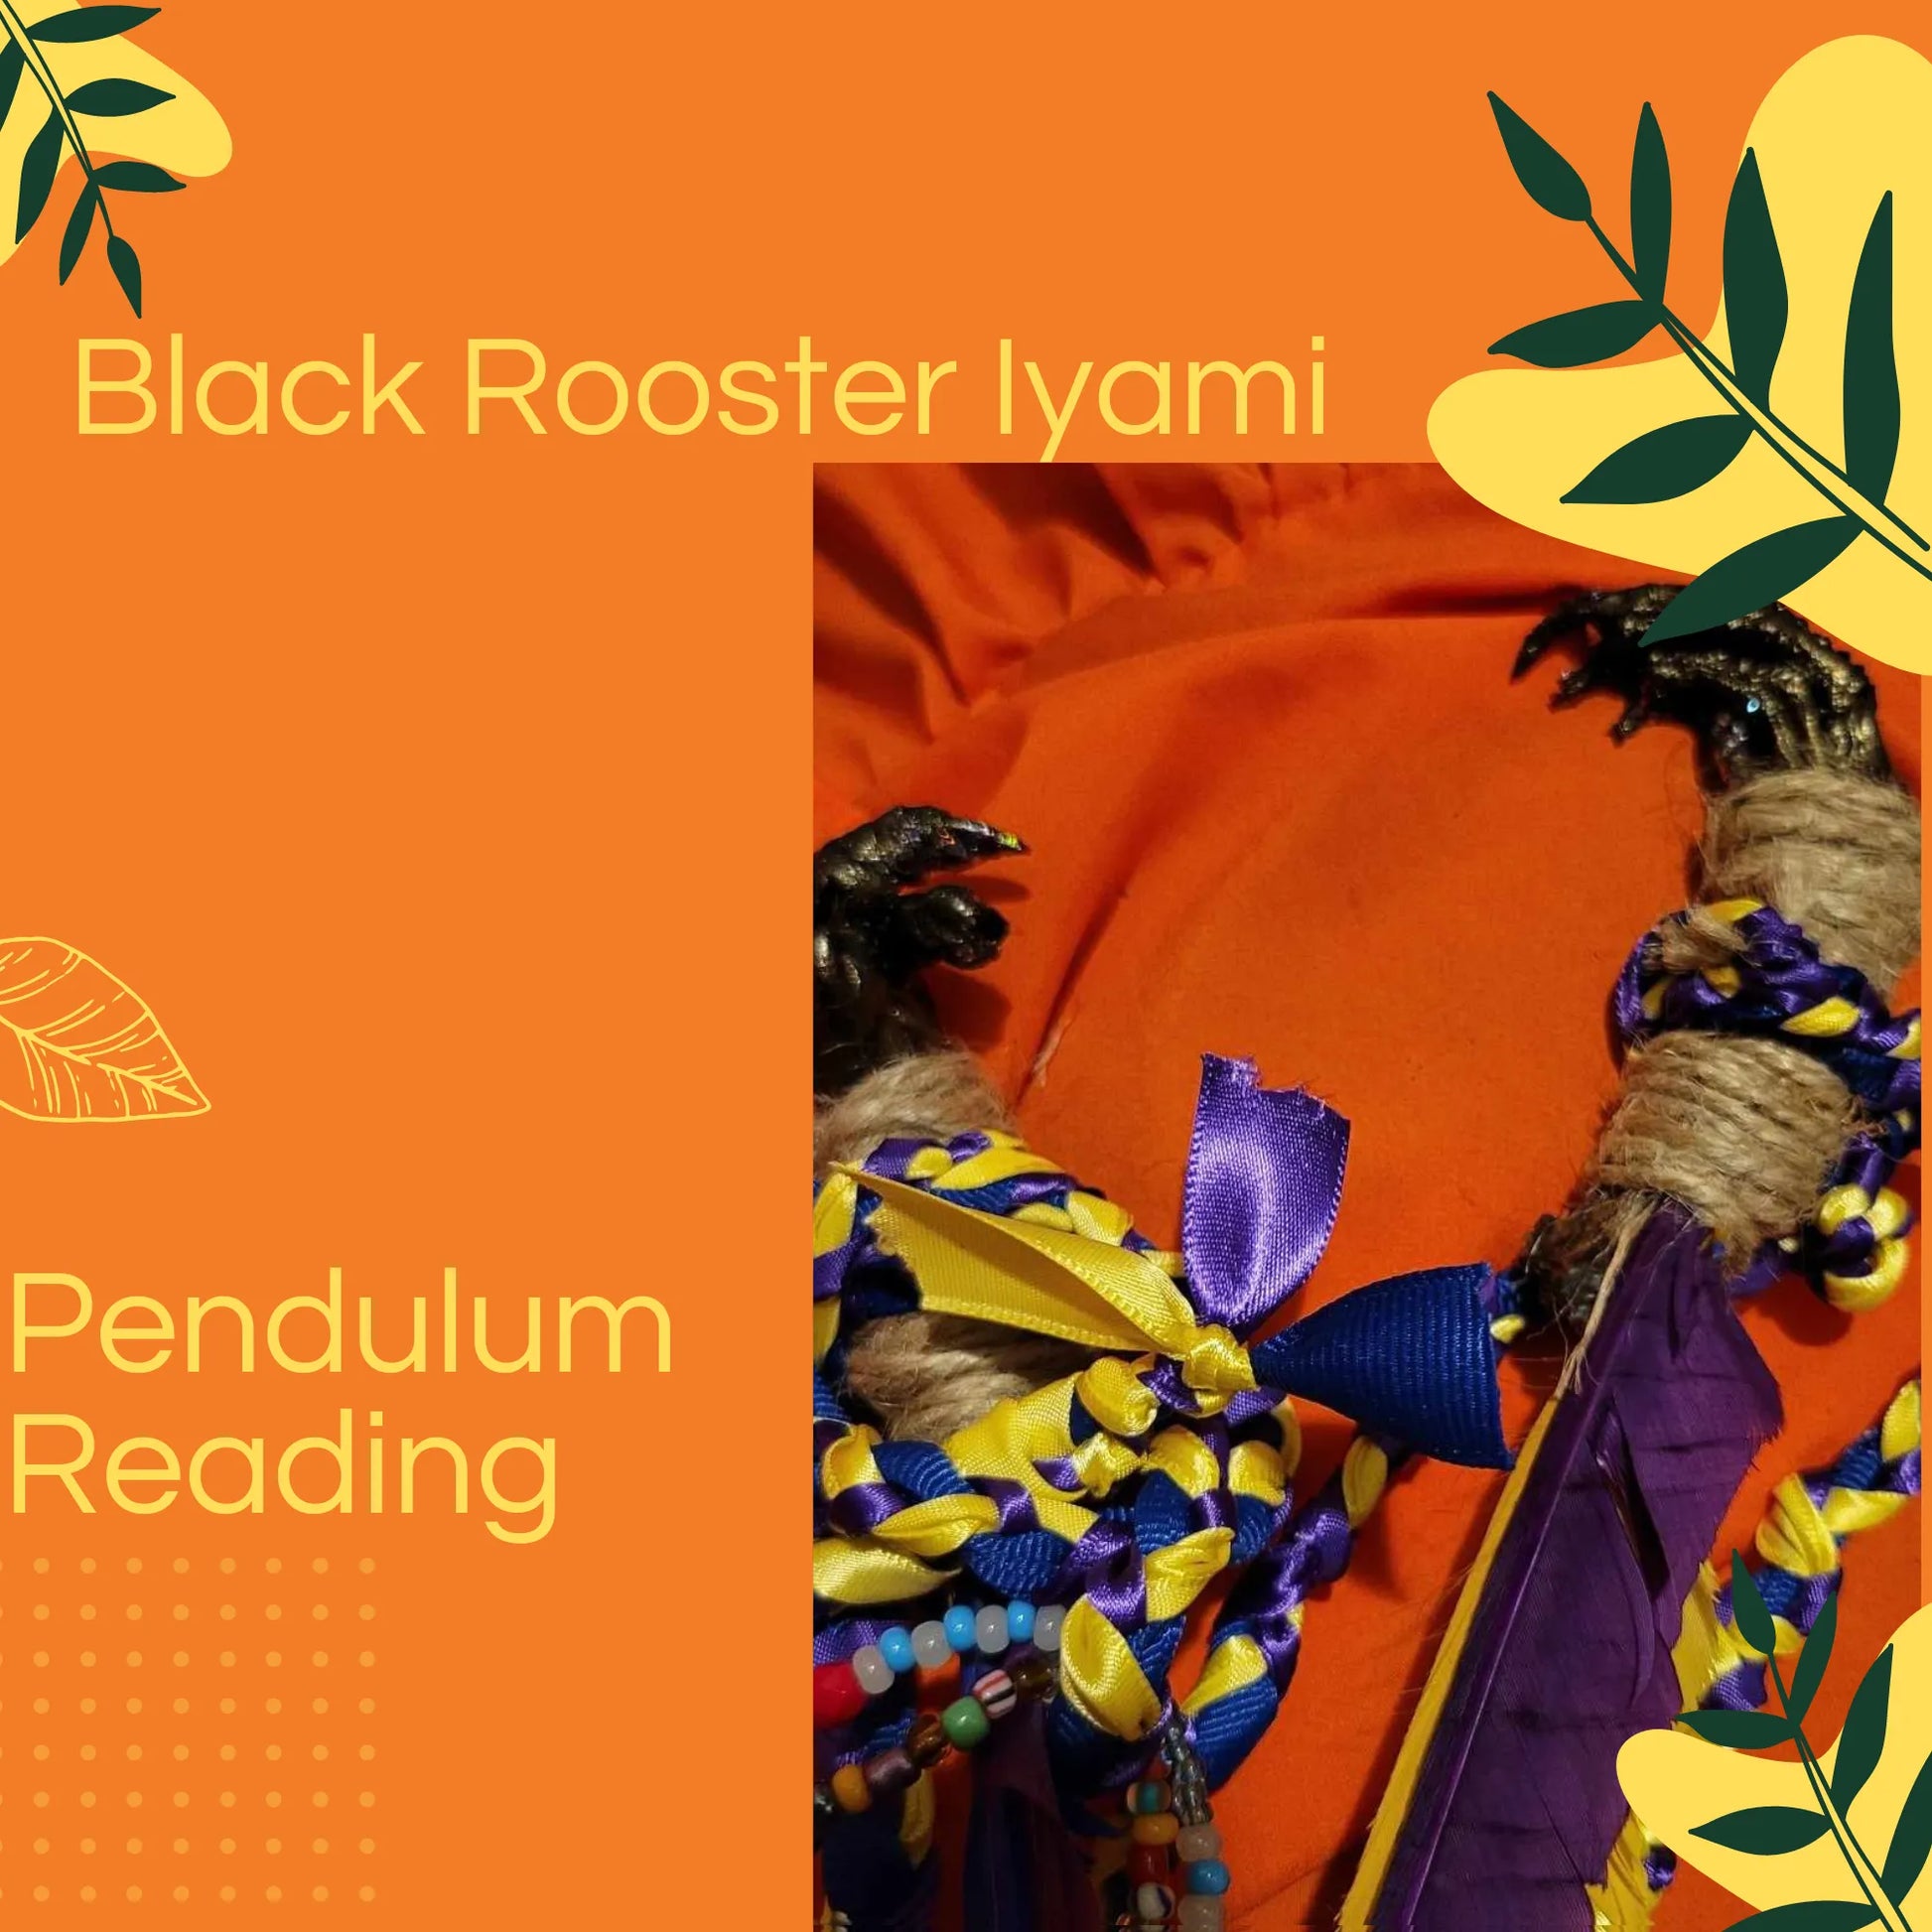 Black Rooster Iyami Pendulum Reading